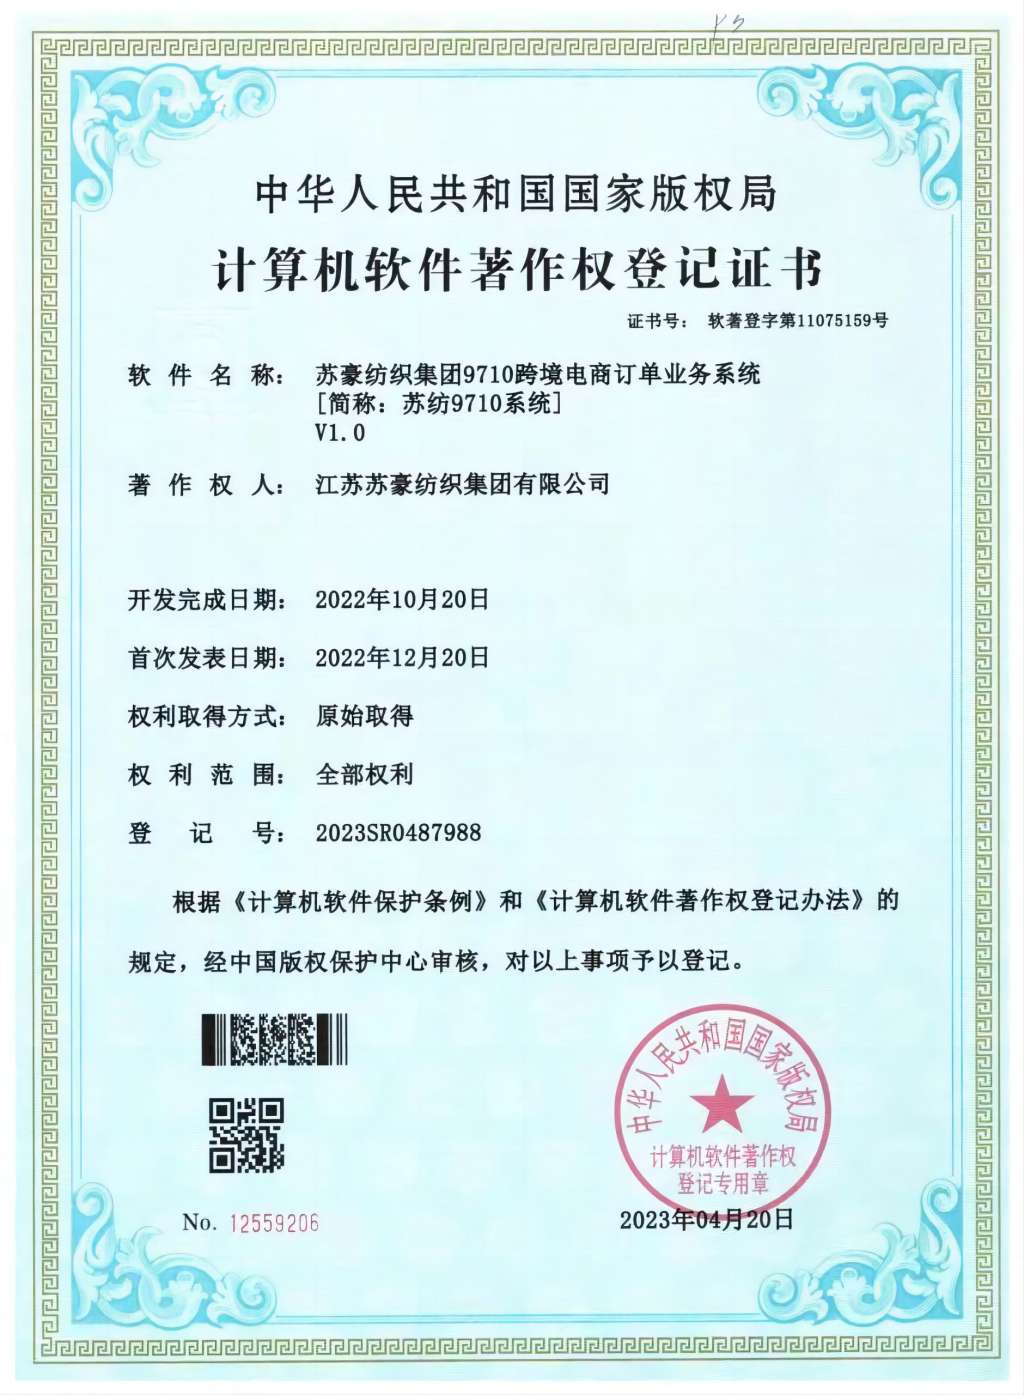 欧宝官方网站(中国)股份有限公司获得三项软件著作权登记证书， 助力跨境电商业务发展